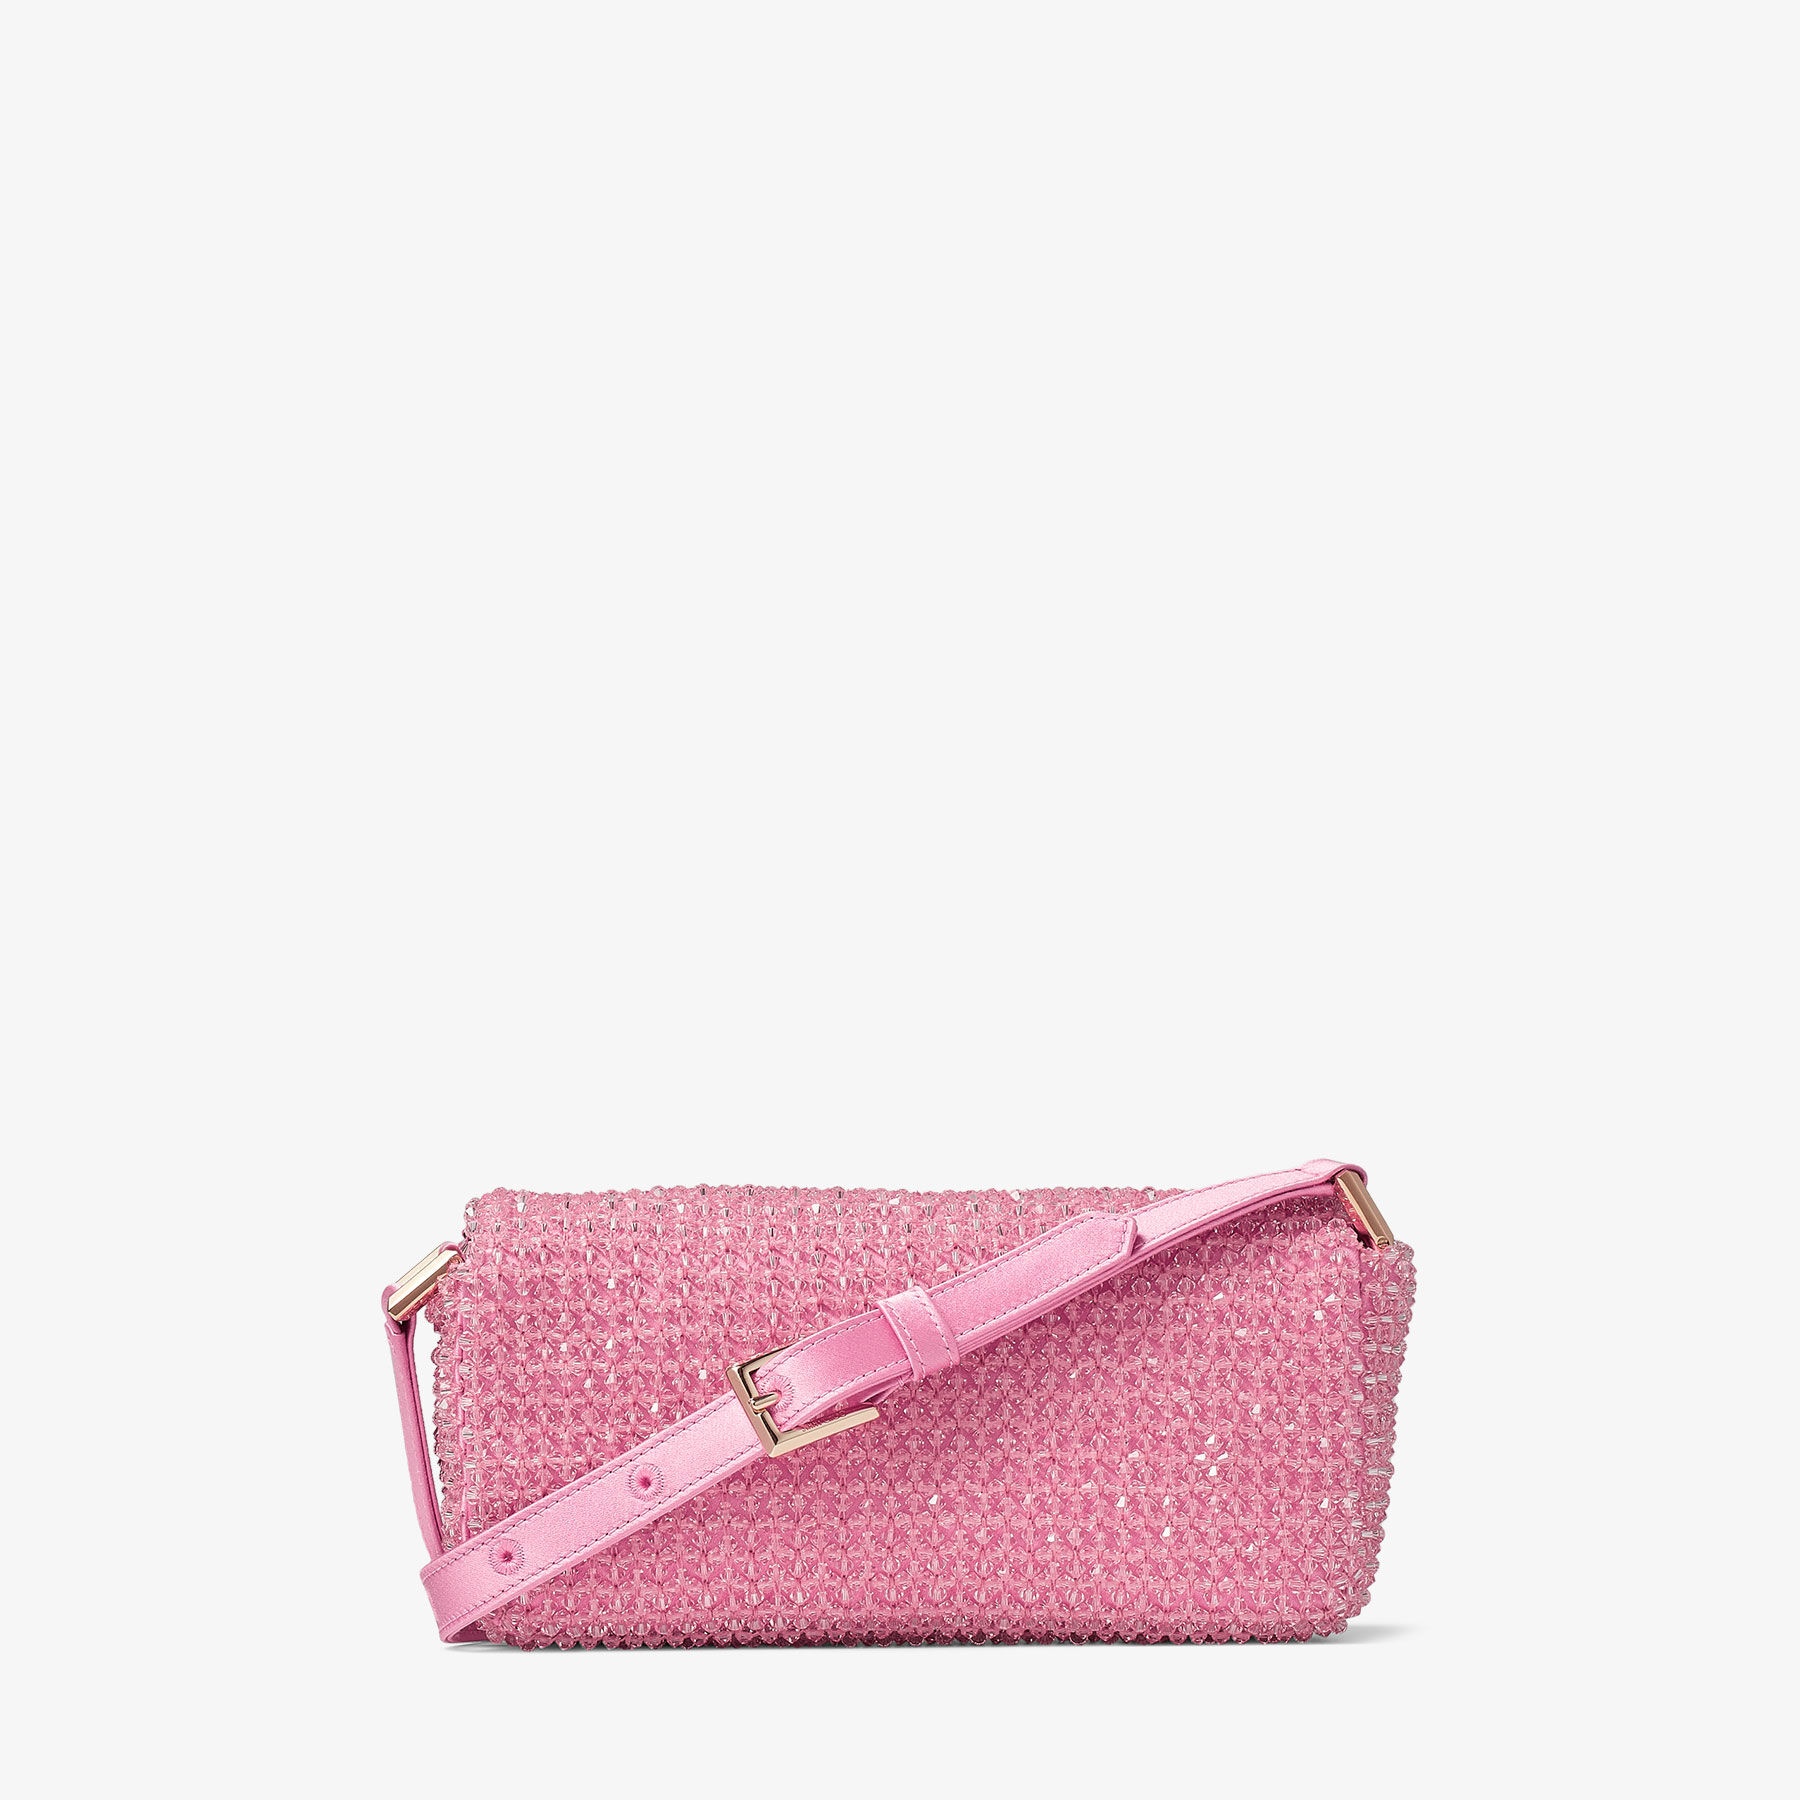 Avenue Mini Shoulder
Candy Pink Satin Mini Shoulder Bag with Crystal Fringe - 7